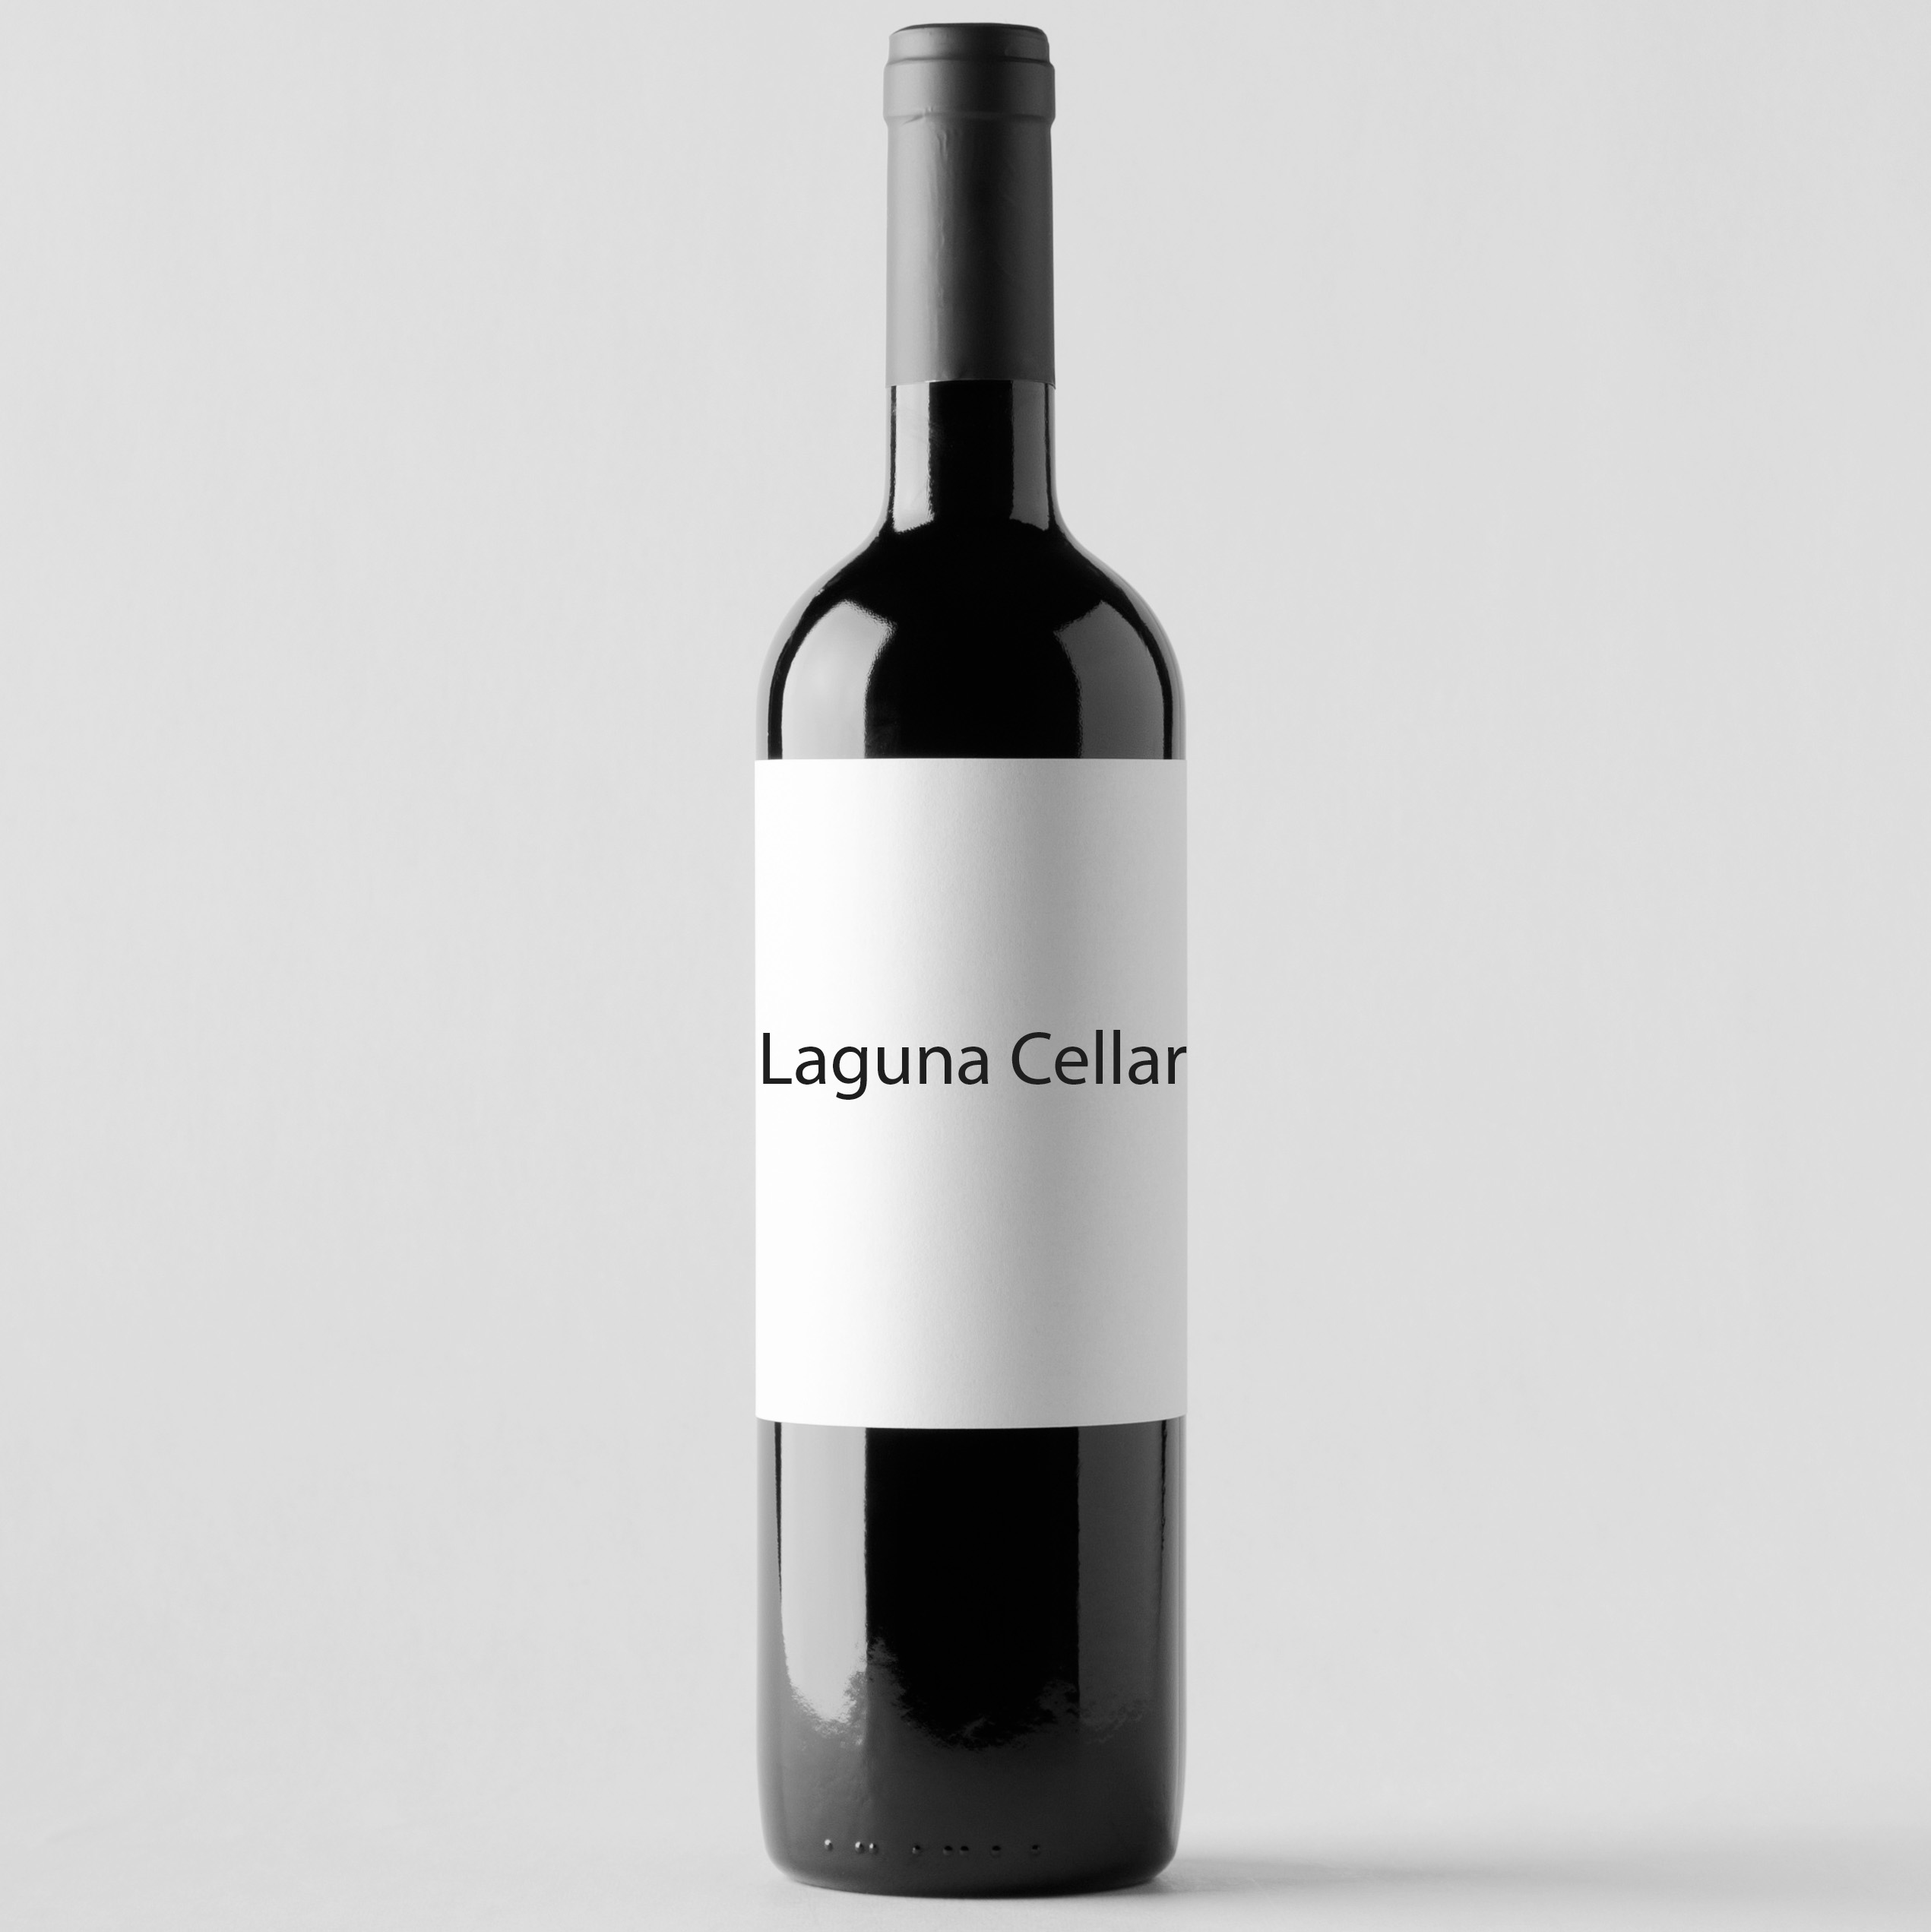 Laguna Cellar featuring Domaine de Chevalier 2014